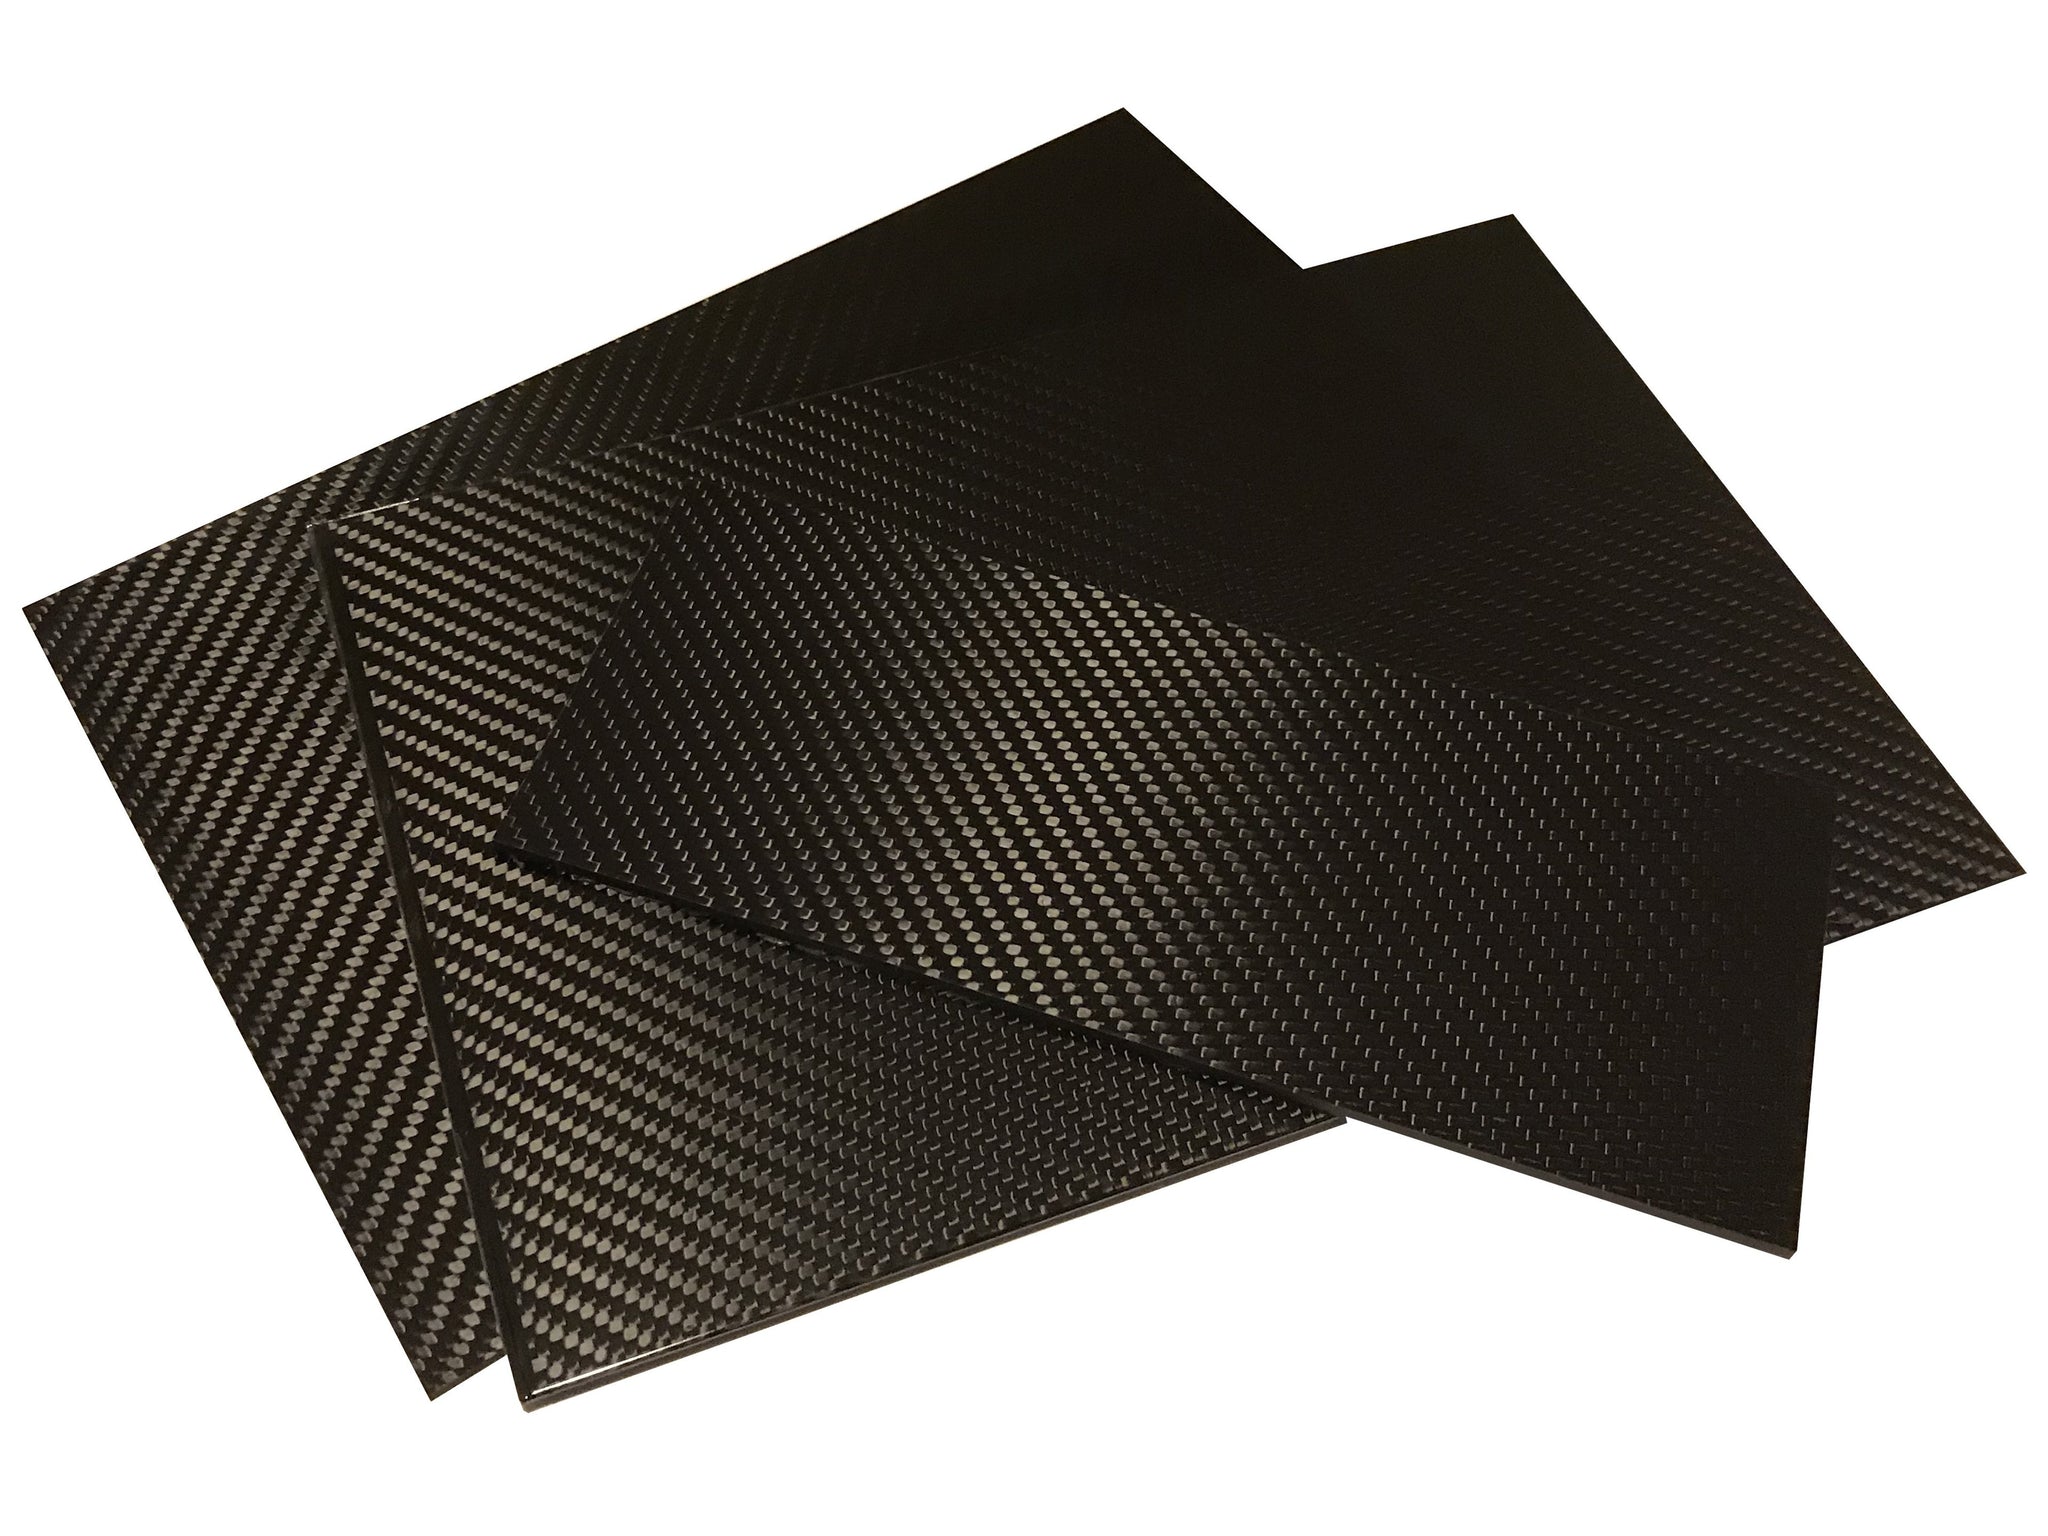 Carbon Fiber Plates - 400mm x 500mm x 2mm Thick - 100% -3K Tow, Plain 